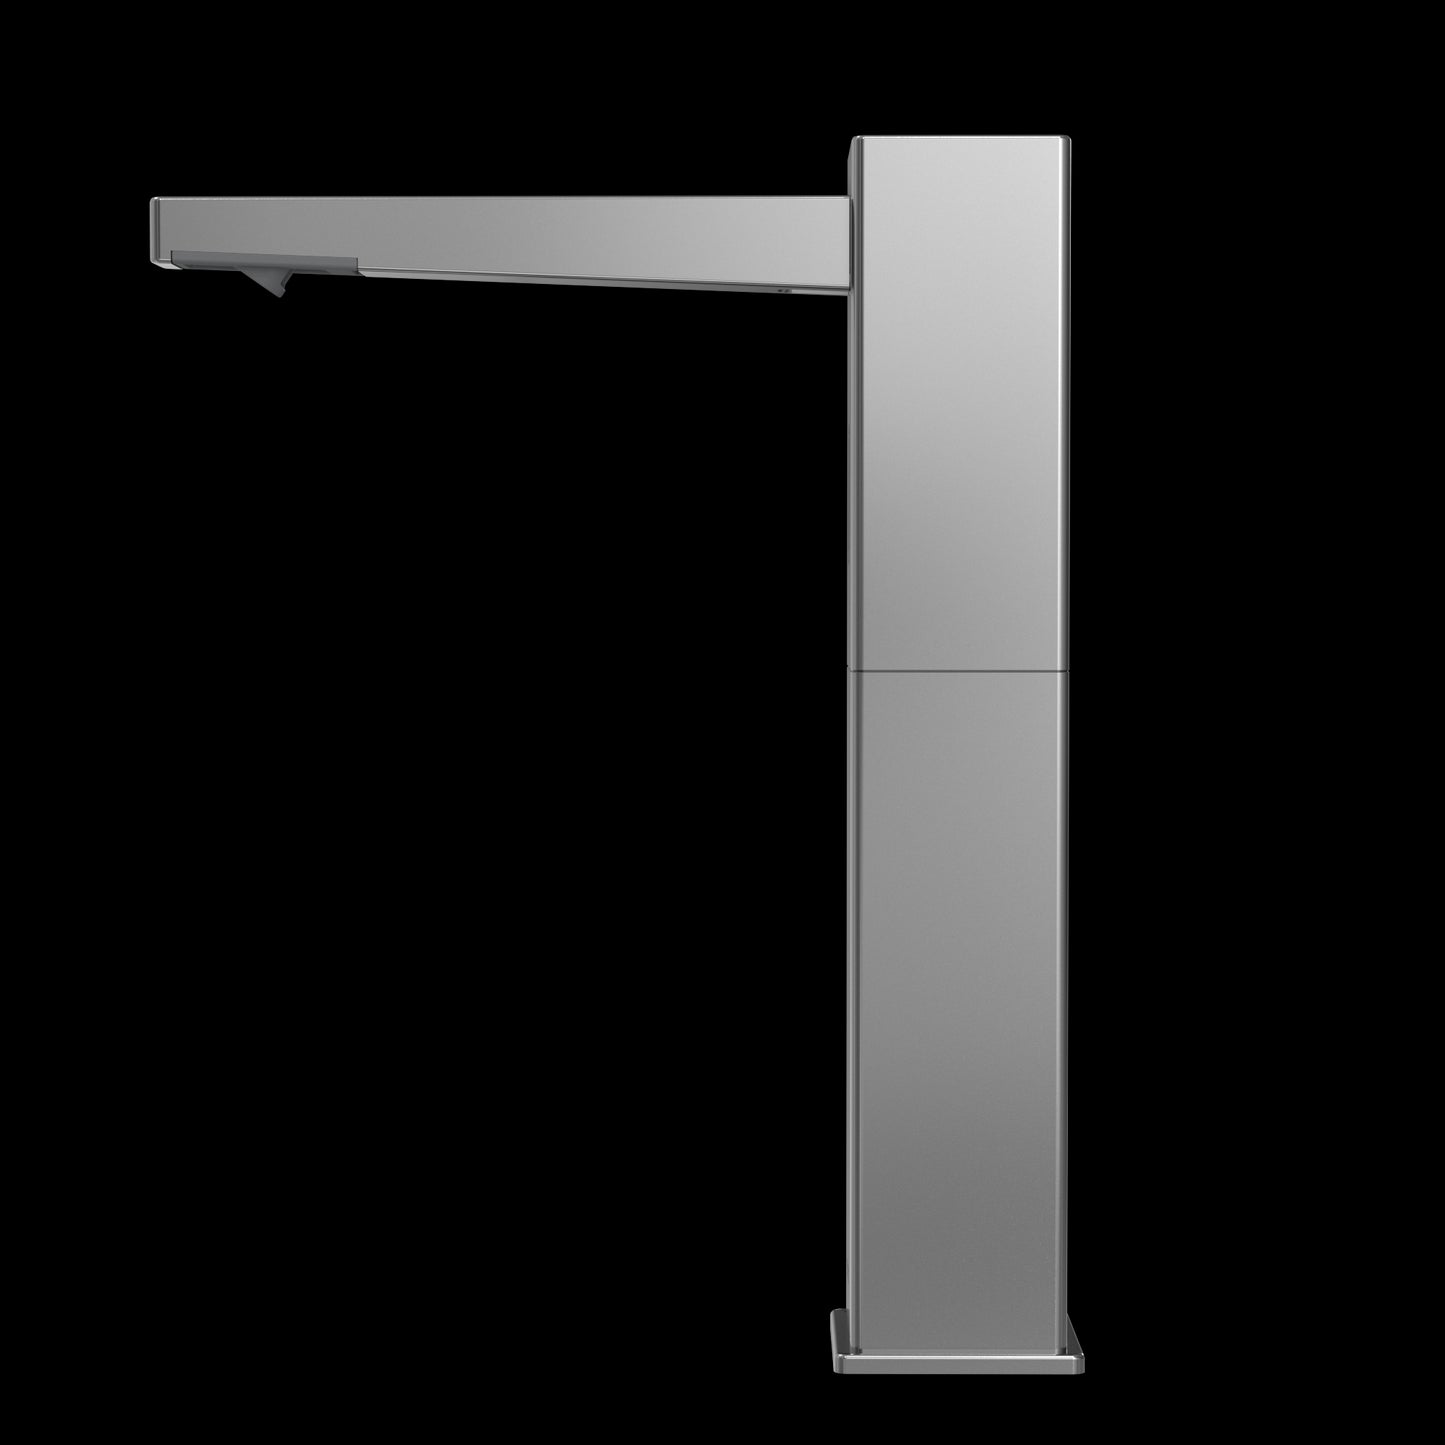 TES202AF#CP - Square M Touchless Foam Soap Dispenser - 3L Reservoir and 2 Spouts - Chrome